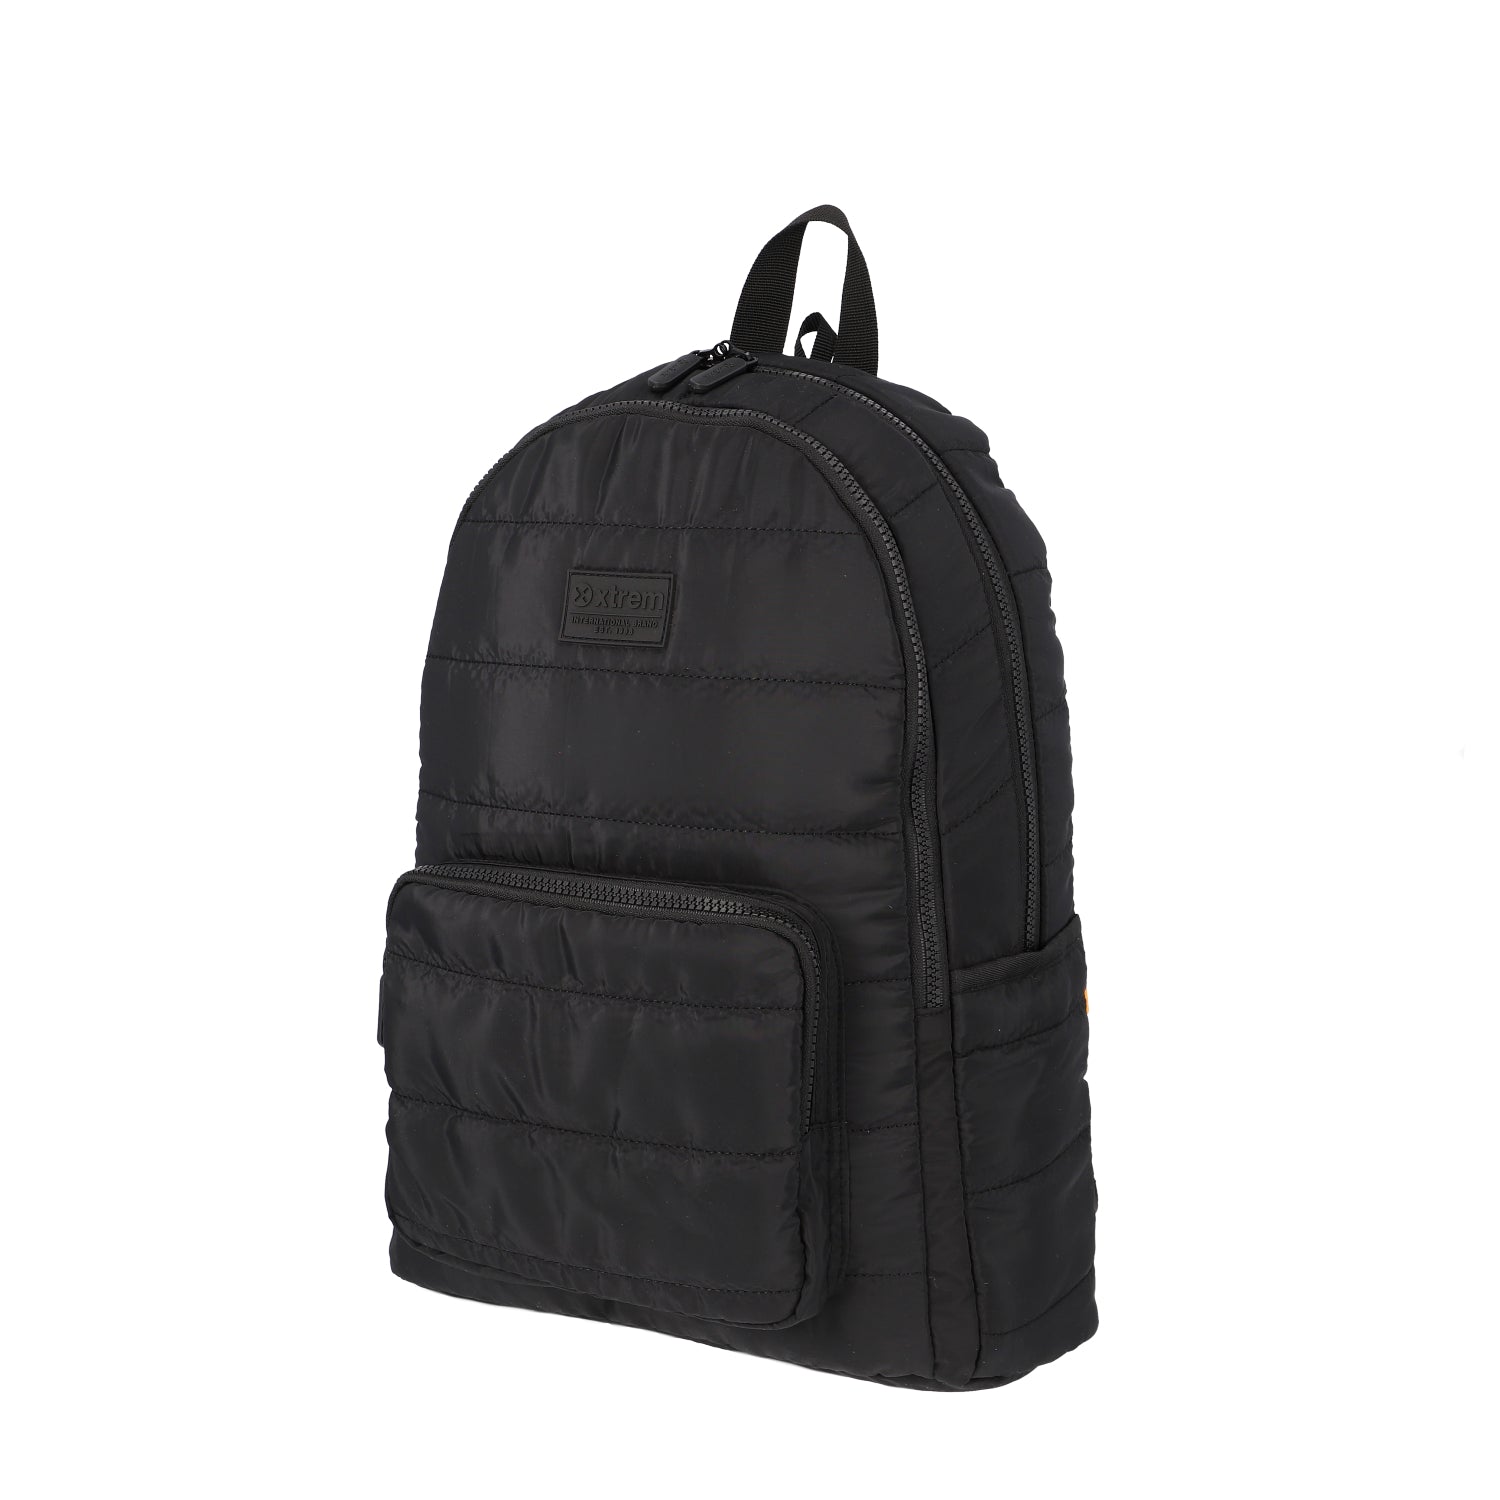 Mochila Lifestyle Backpack Hamilton 236 Black